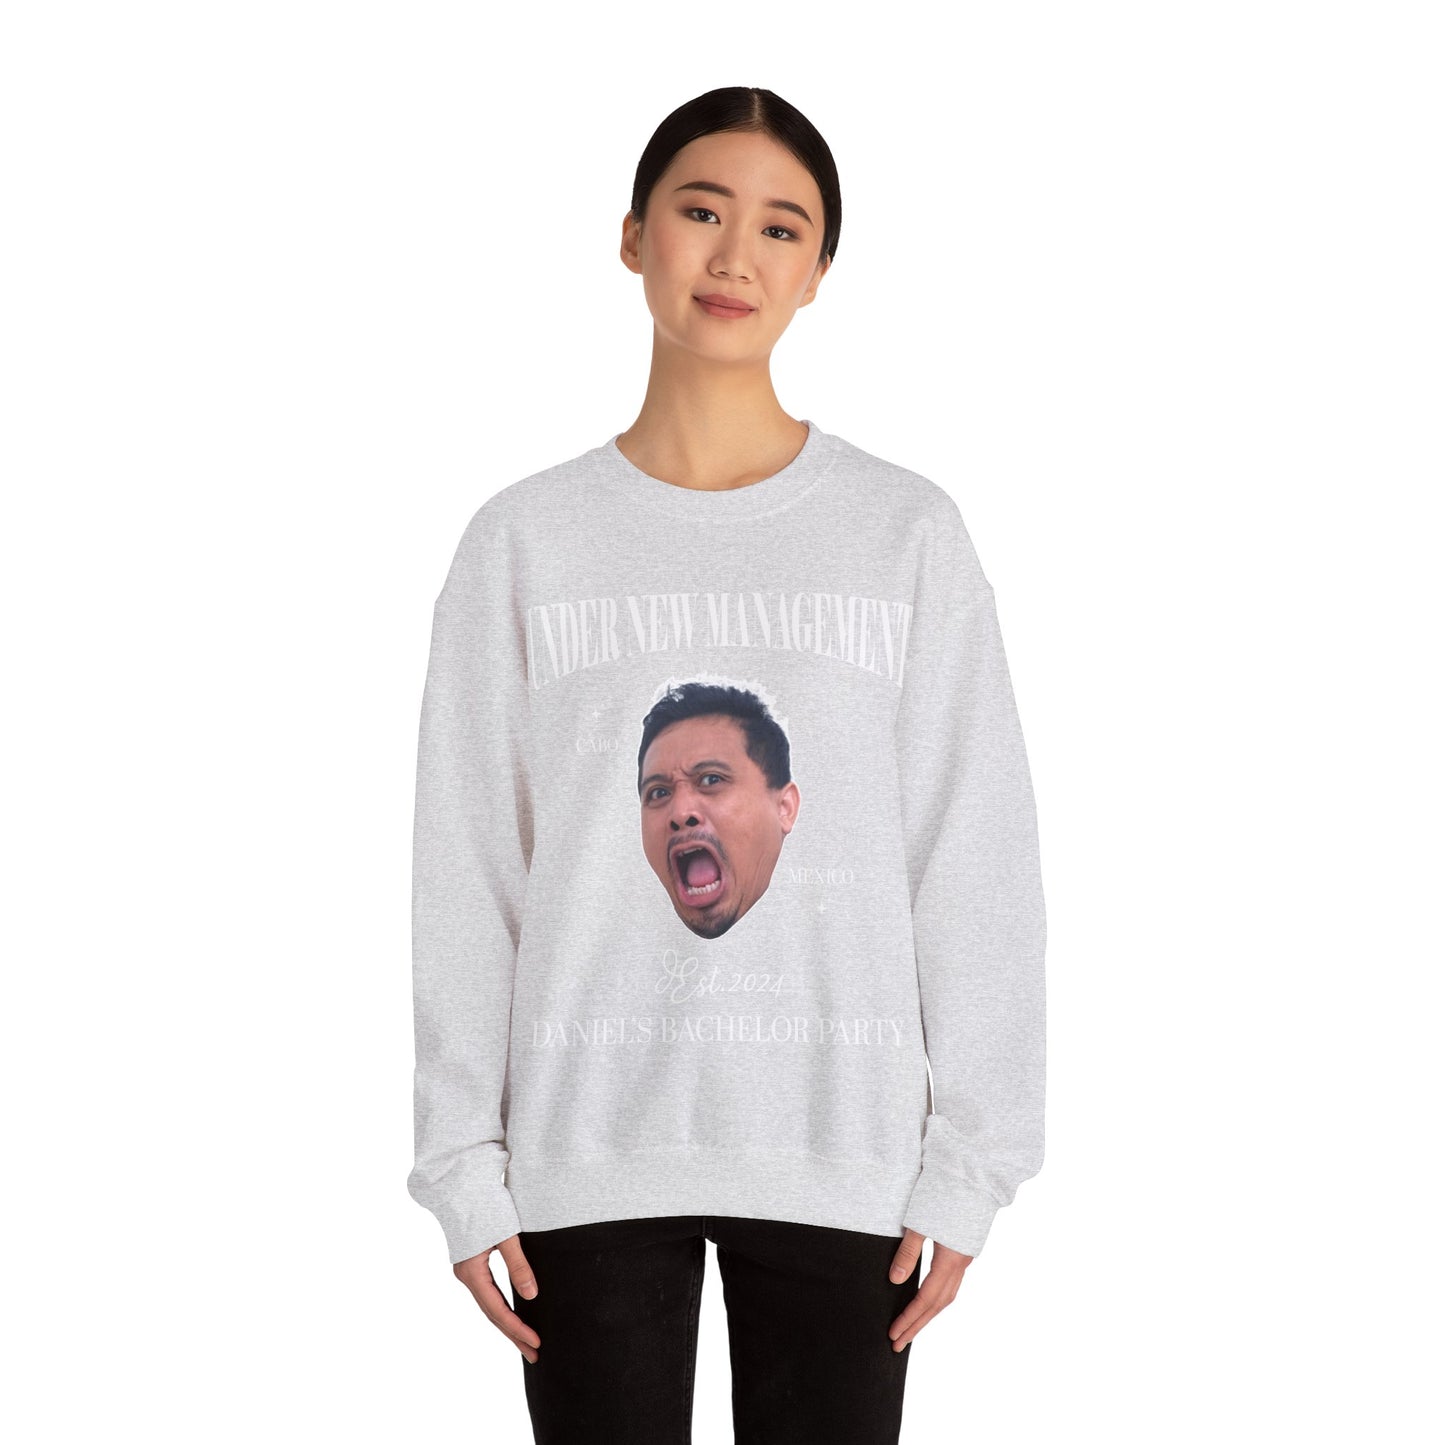 The Groom Bachelor Party Sweatshirt, Groomsmen Sweatshirt Funny Bachelor Sweatshirt Group Bachelor Sweatshirt Funny Face Sweatshirt, 8 S1647